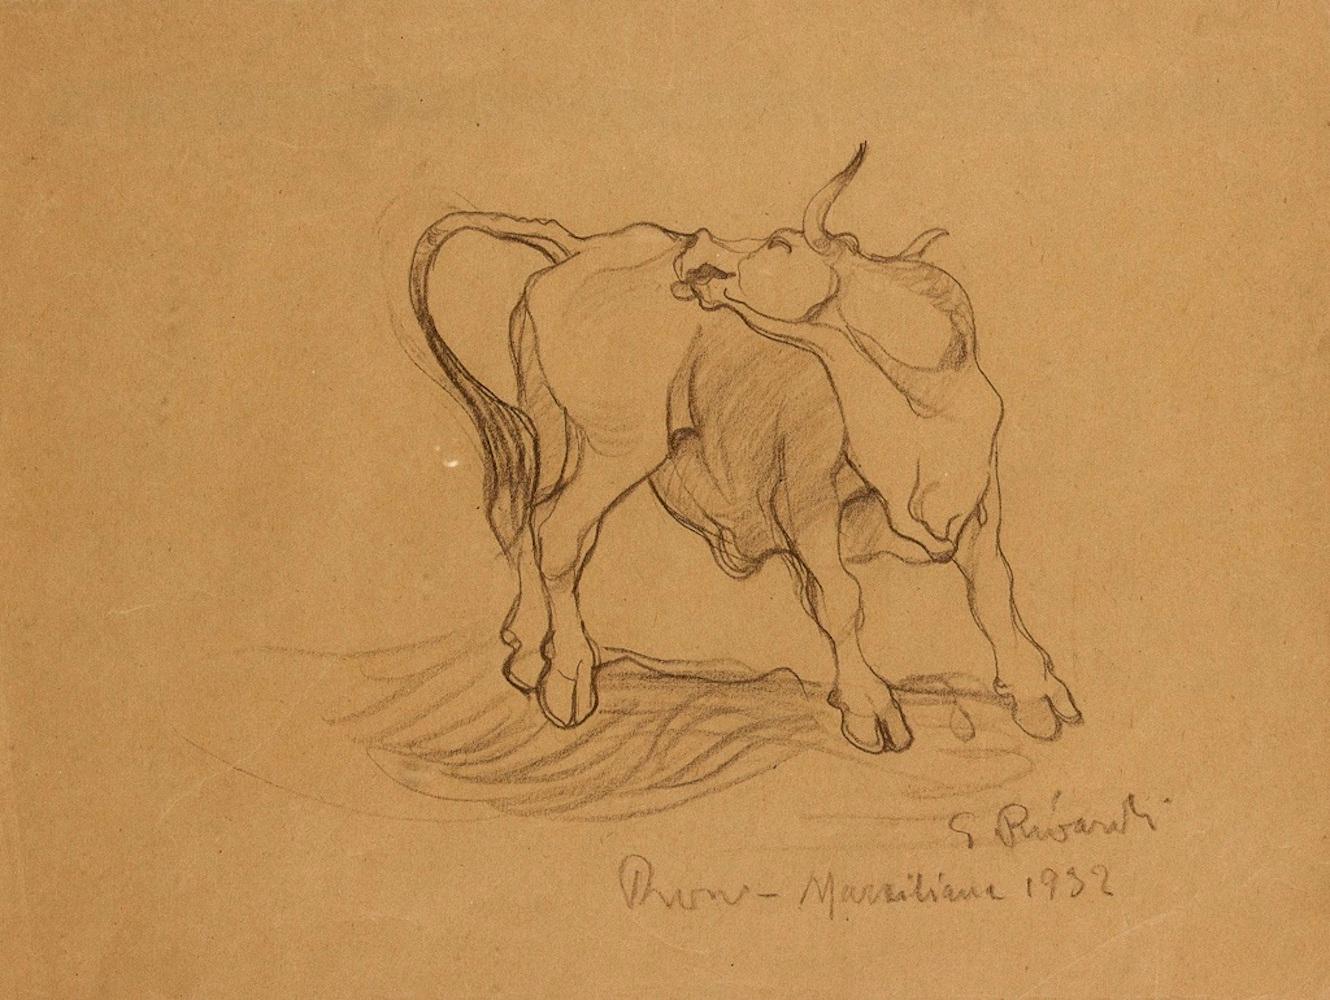 Bull - Original Pencil Drawing by G. Rivaroli . 1932 1